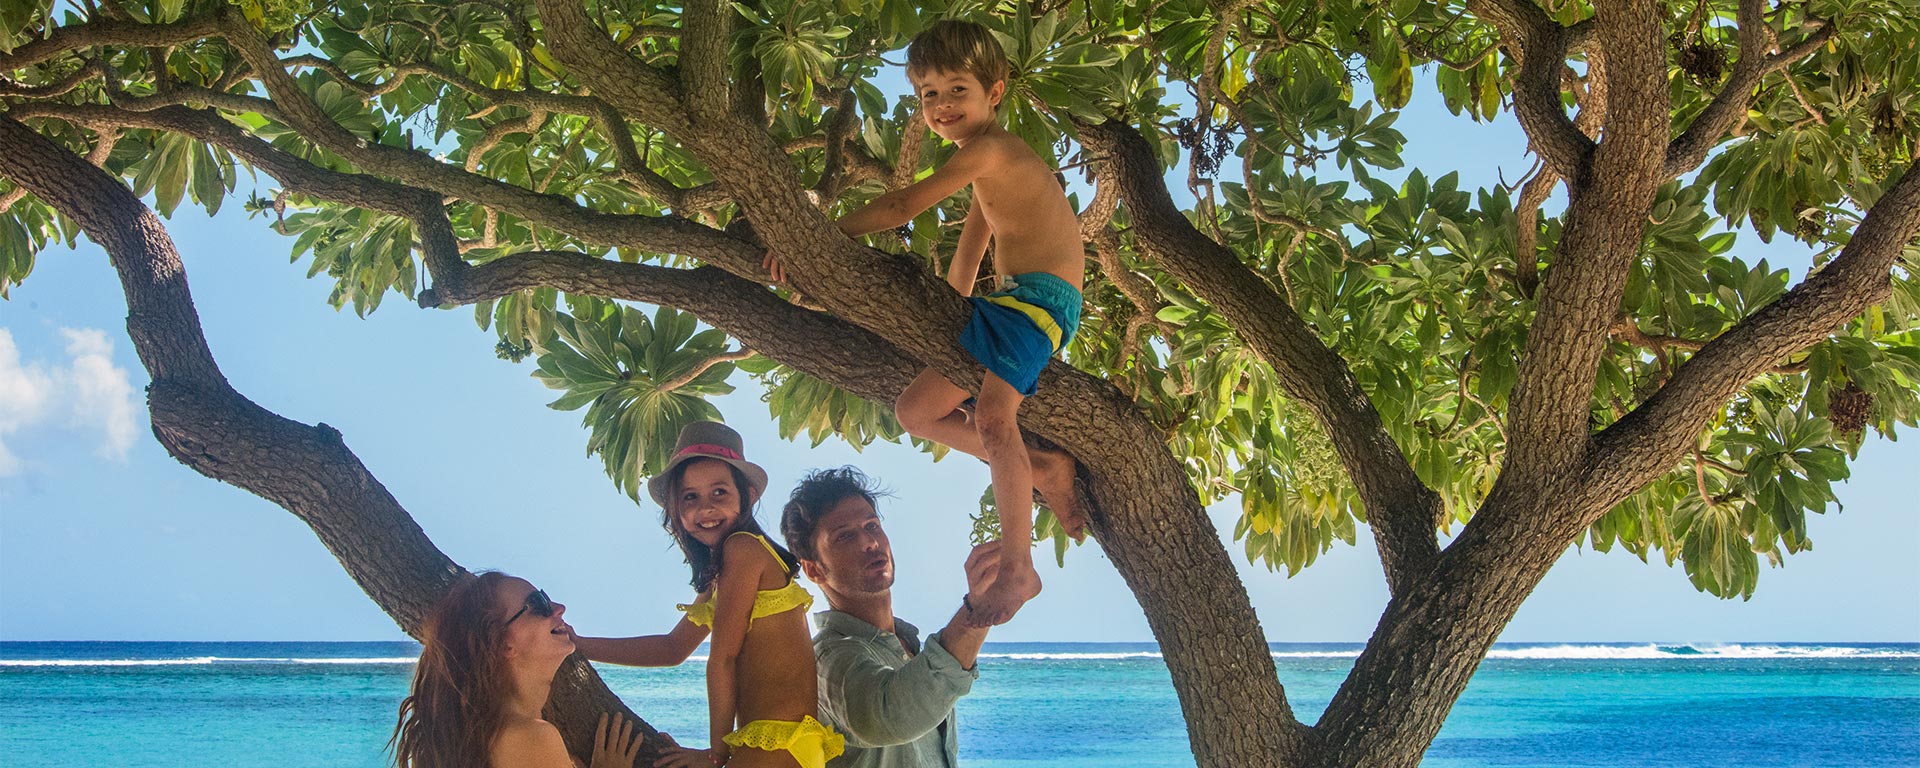 Oтель-мечта для семейного отдыха на Маврикии